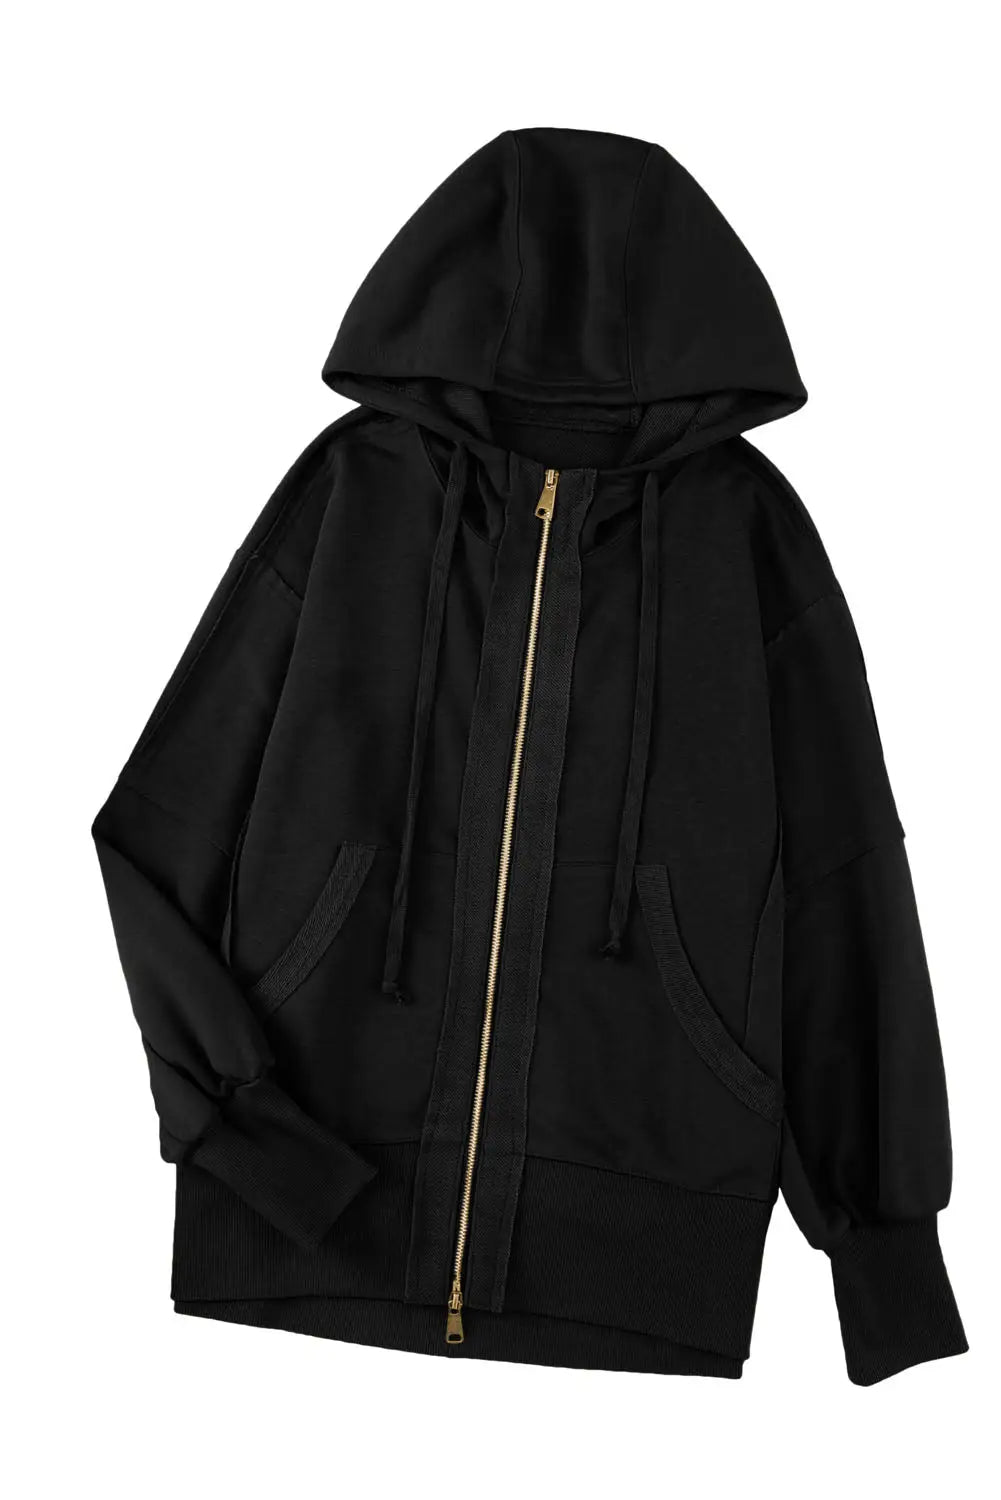 Black raw edge exposed seam full zip hoodie - sweatshirts & hoodies